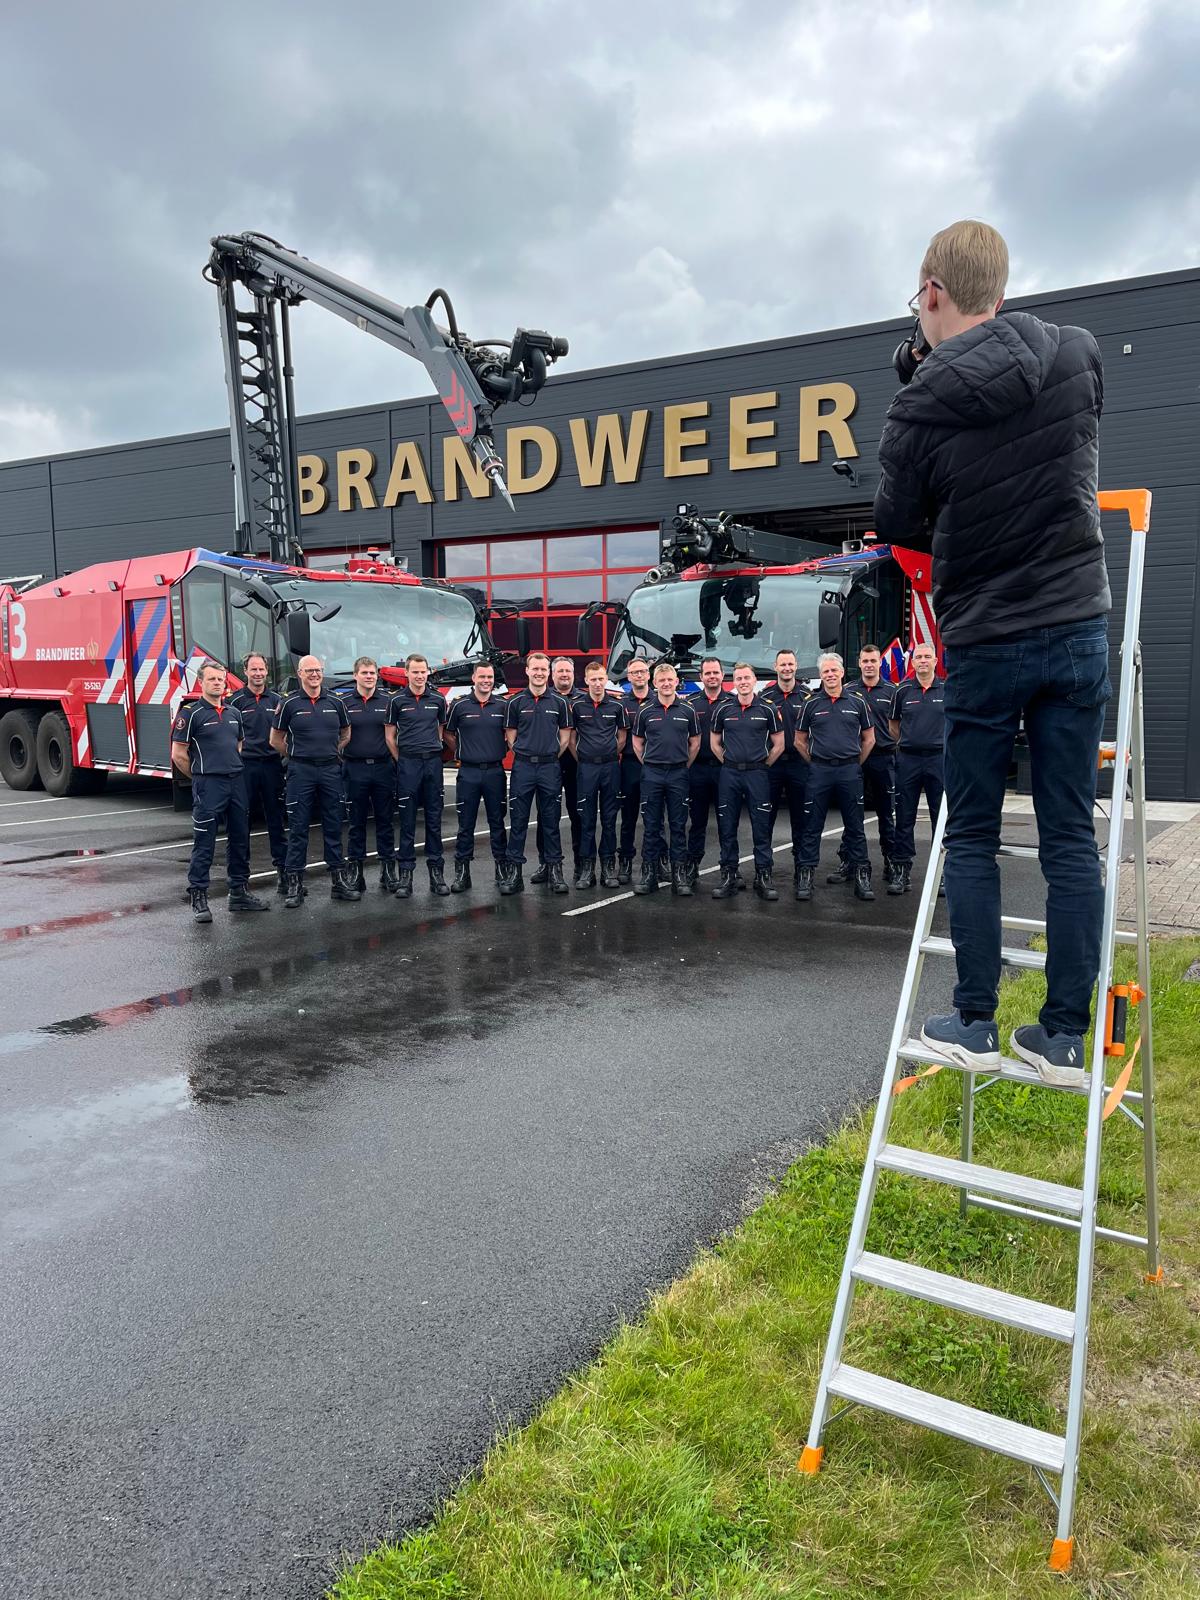 Fotograaf maakt een foto op een ladder van alle brandweermannen voor de kazerne van Brandweer Lelystad